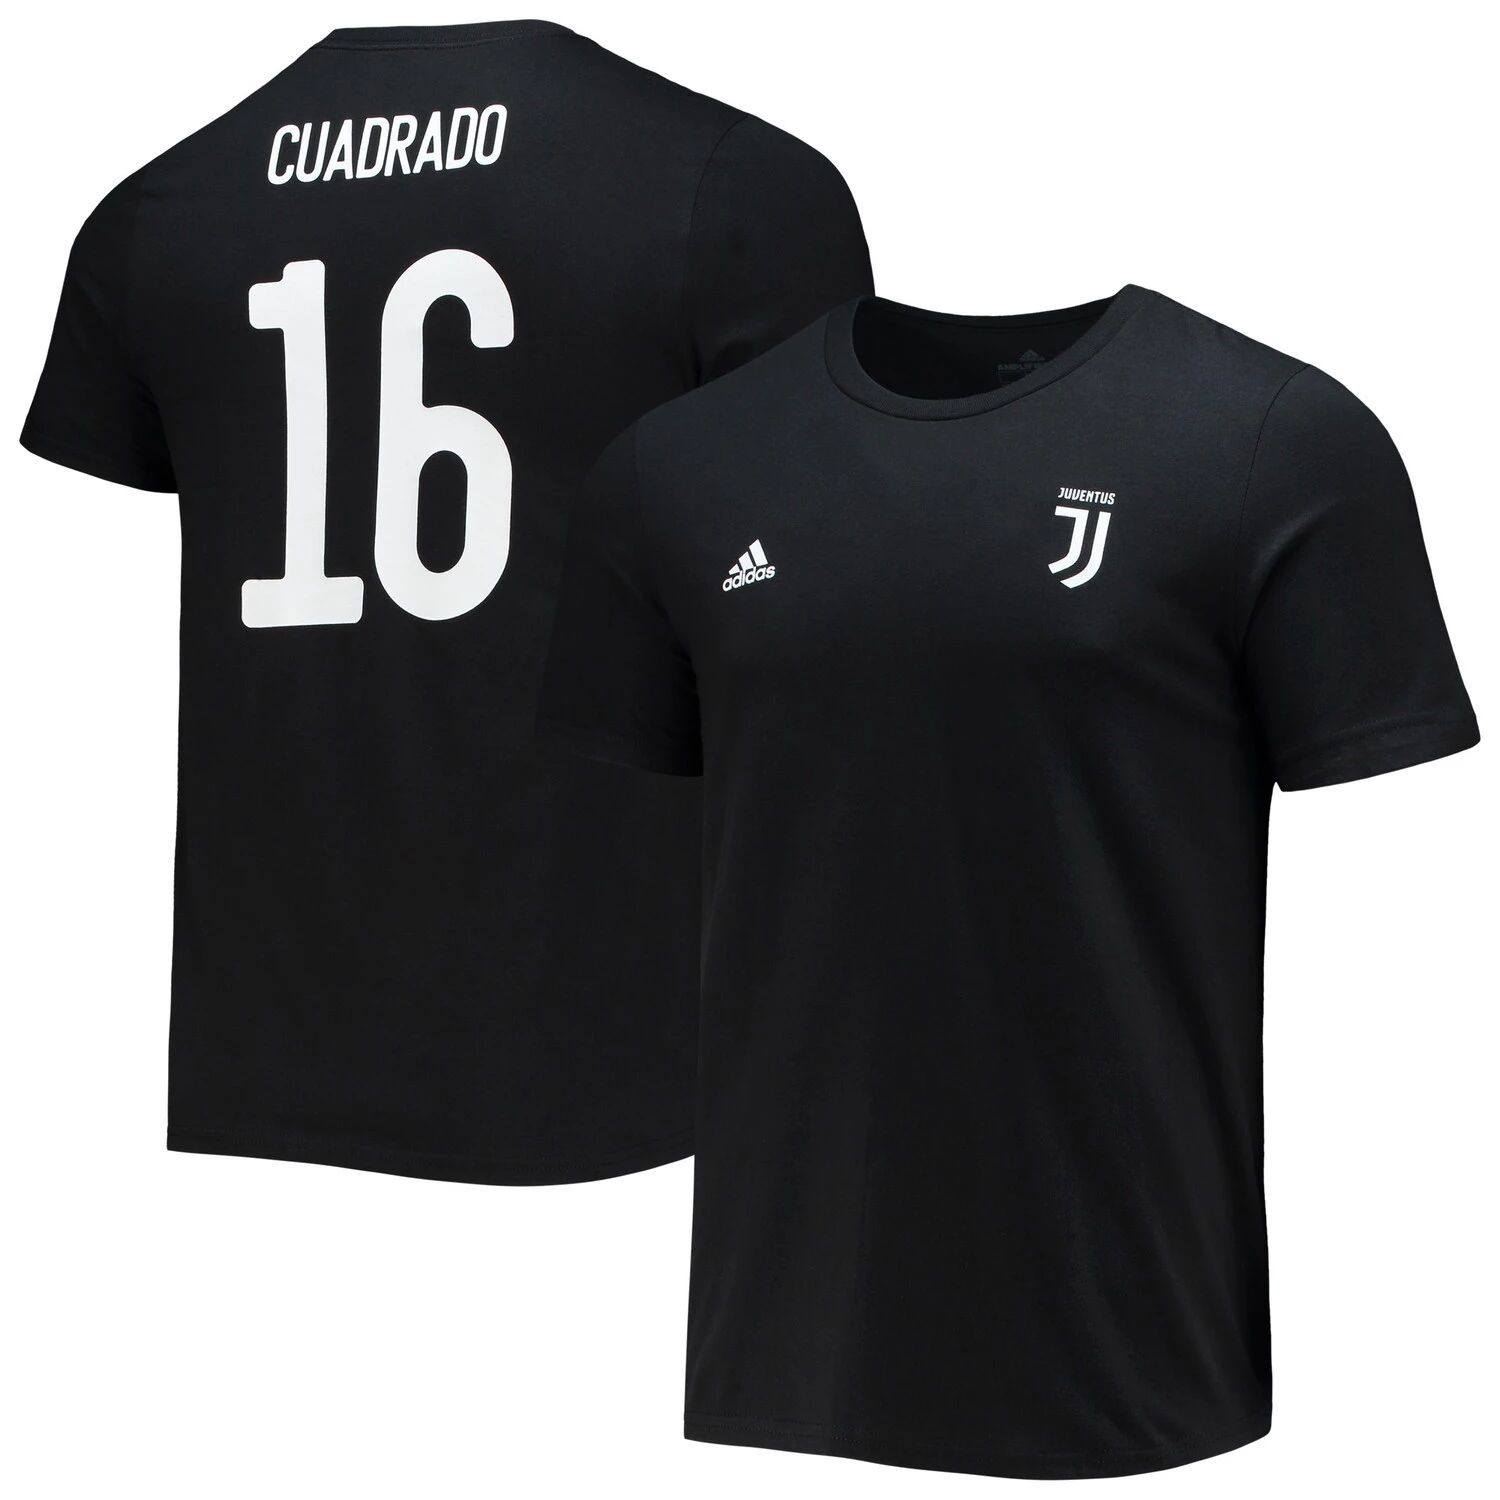 Мужская черная футболка Juan Cuadrado с именем и номером усилителя Juventus adidas